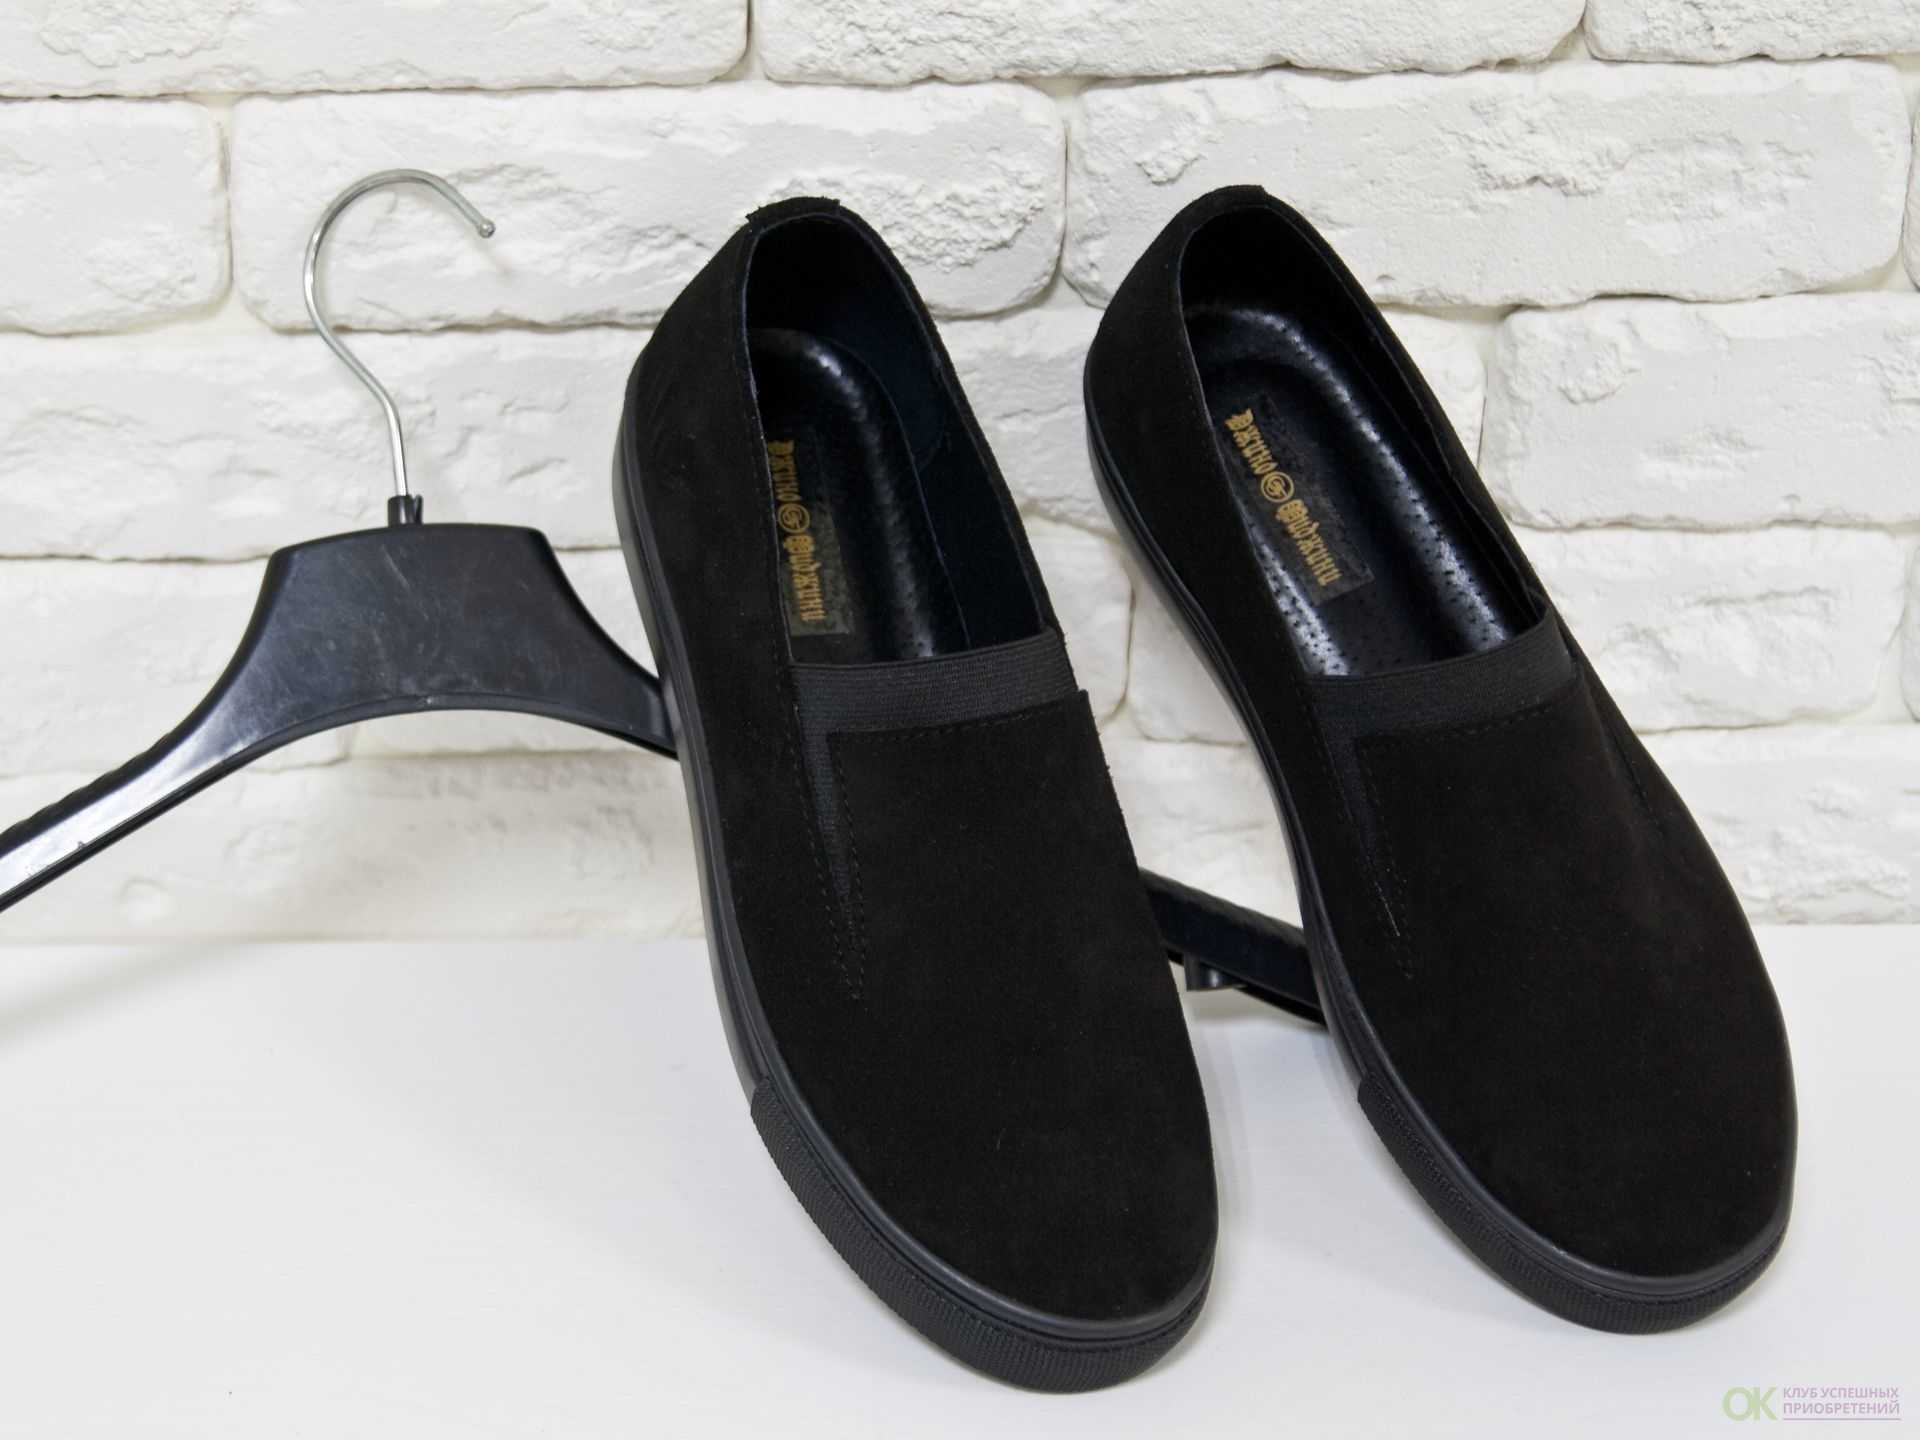 Слипоны со шнурками – просто и удобно Как называются слипоны со шнурками и с чем лучше их носить Варианты красивой шнуровки